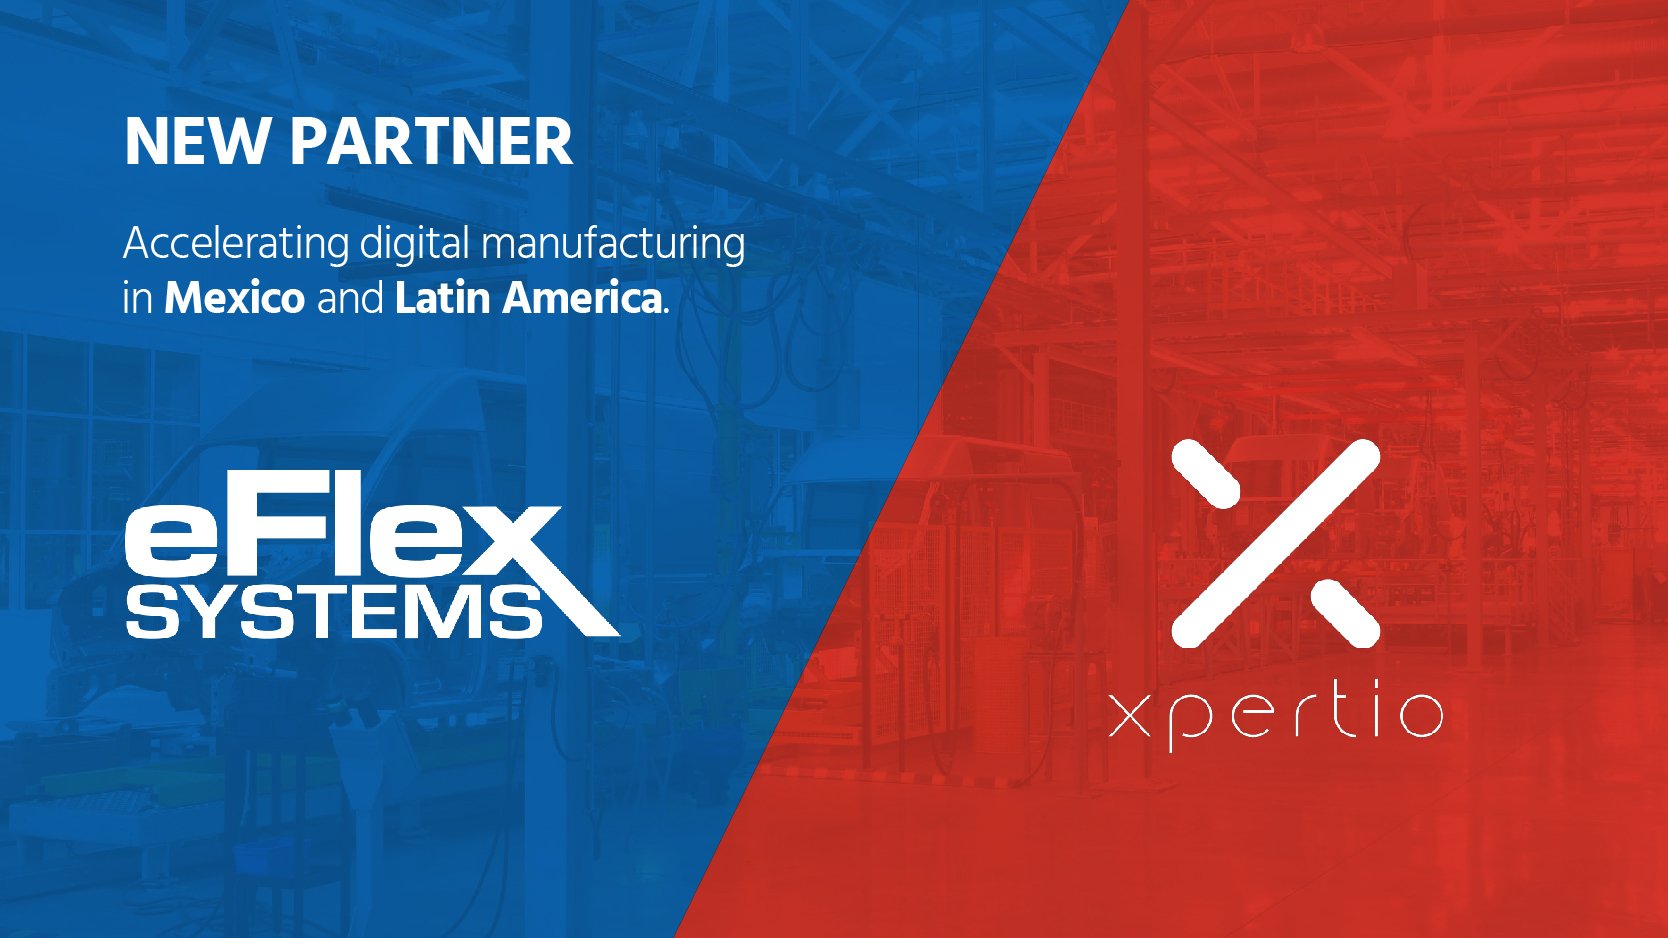 eflex and xpertio partnership